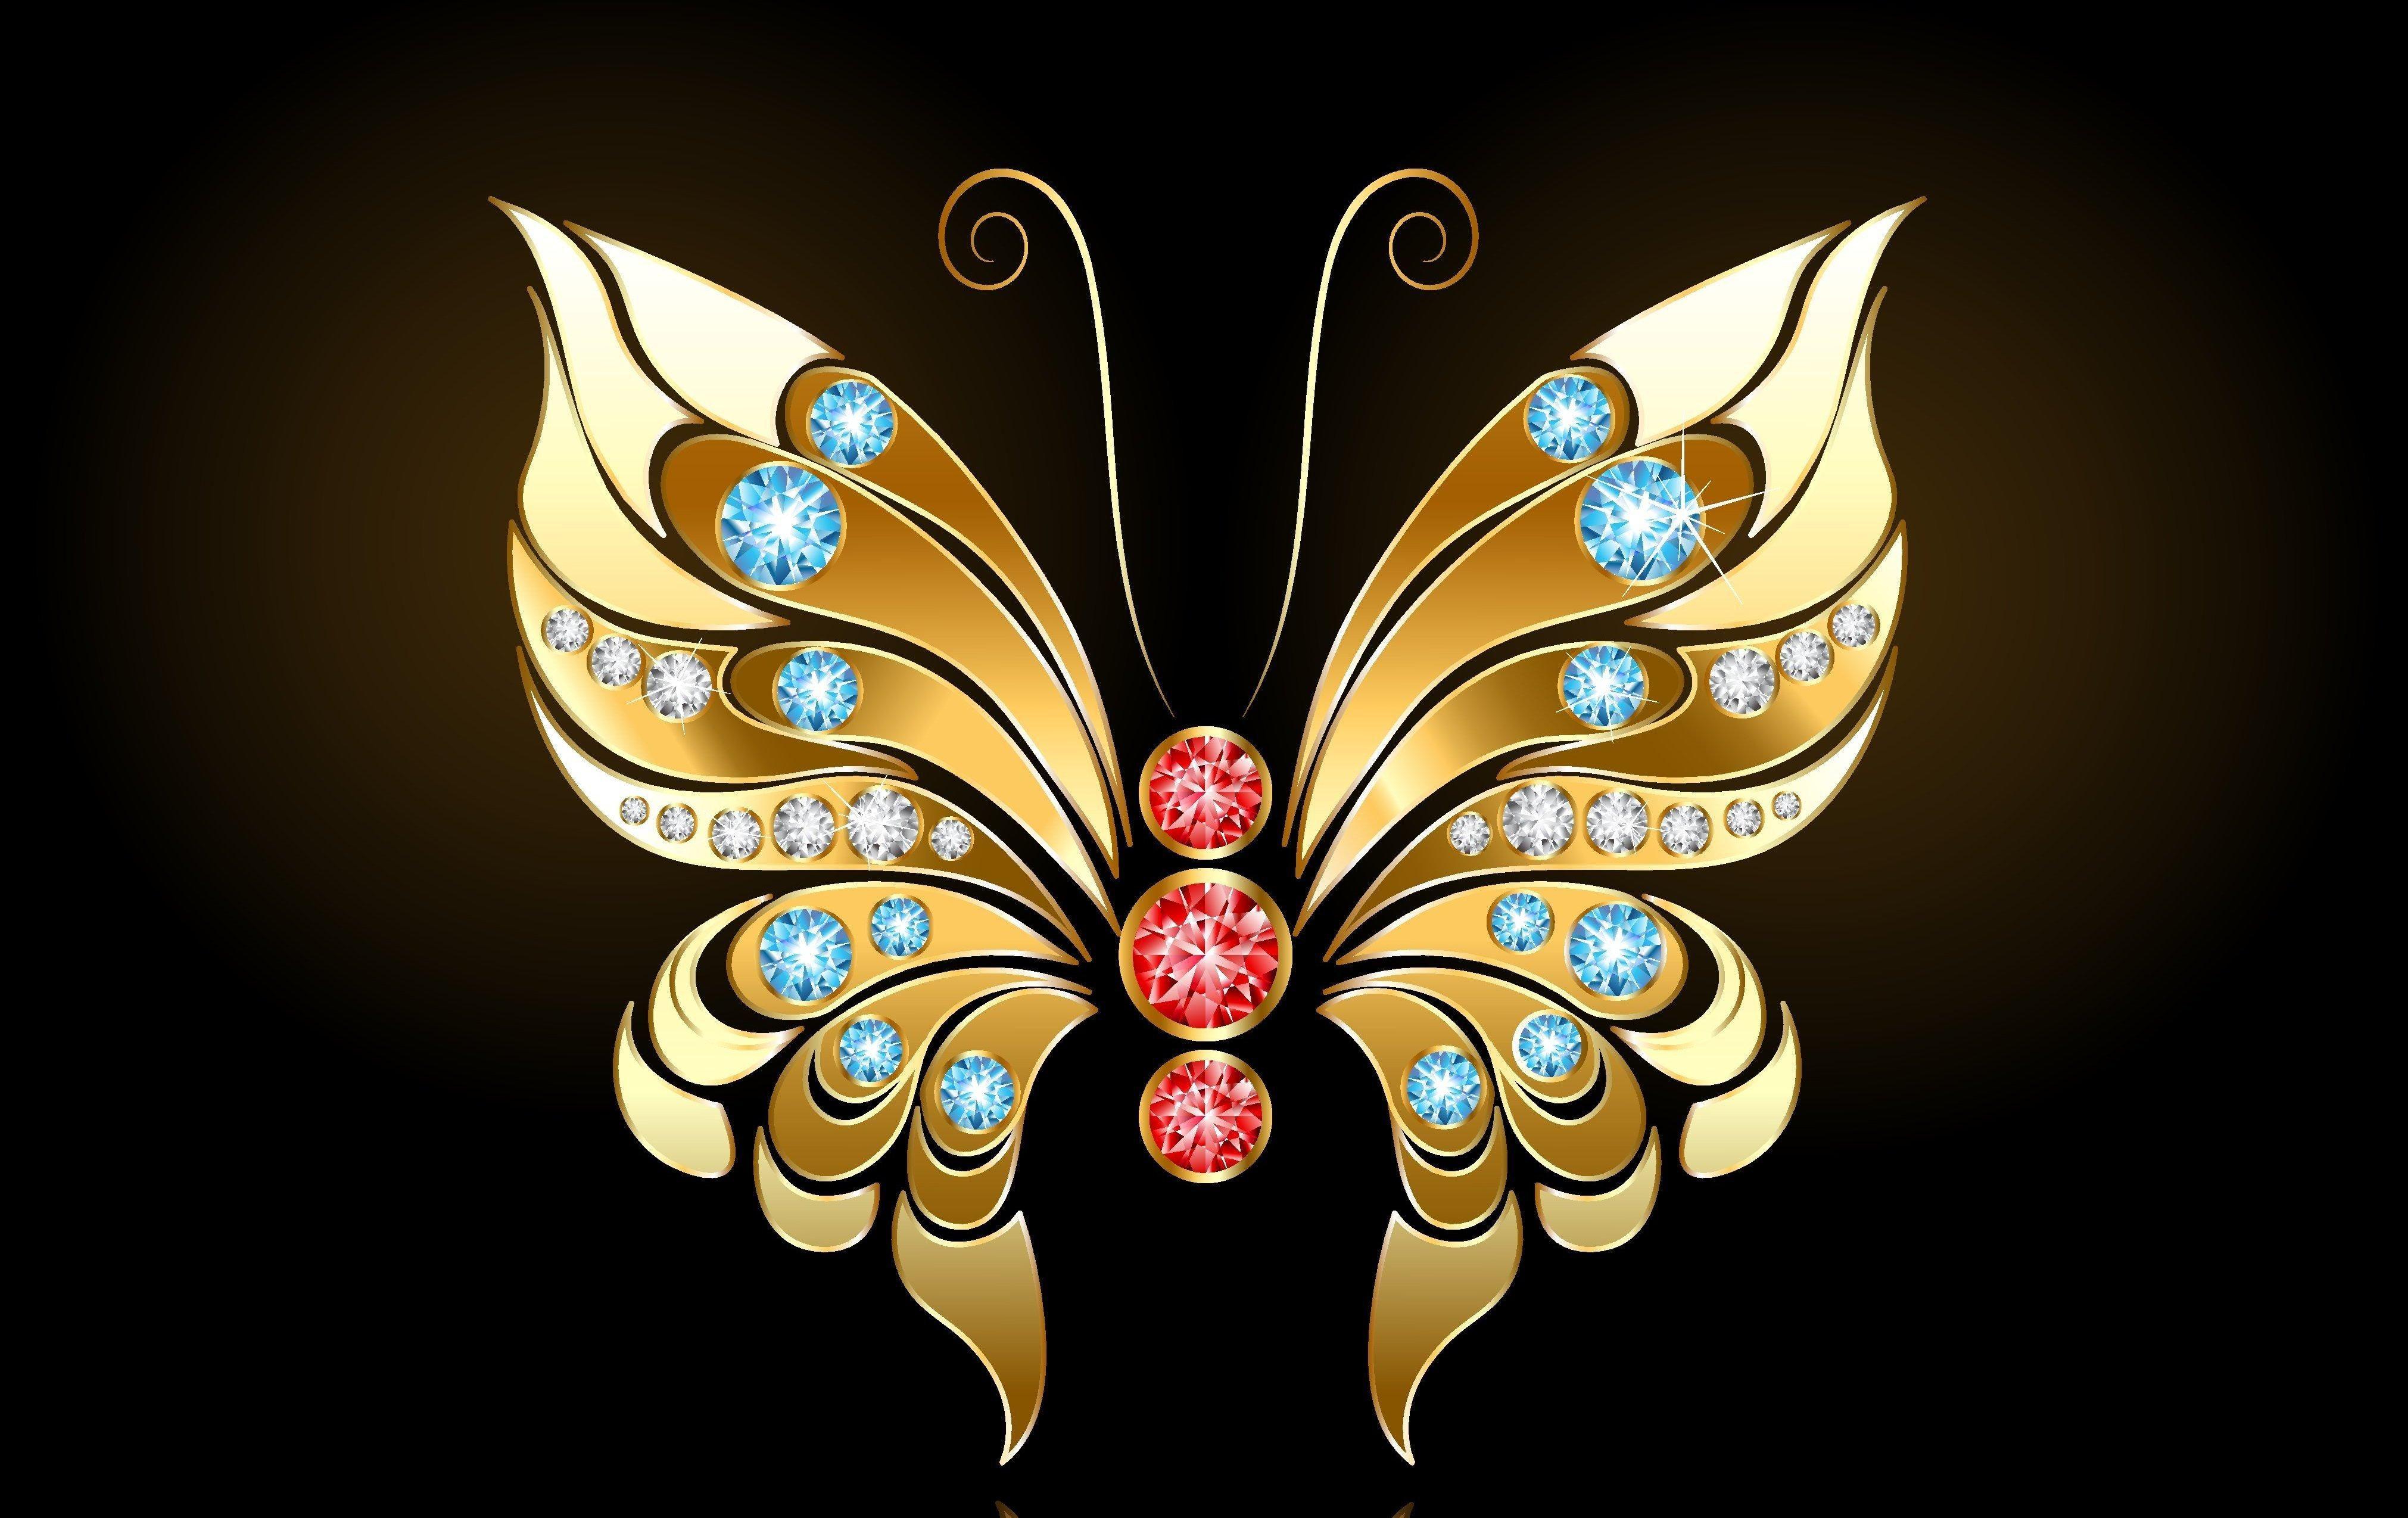 Nhóm hình nền bướm vàng 4043x2548, Tải xuống miễn phí